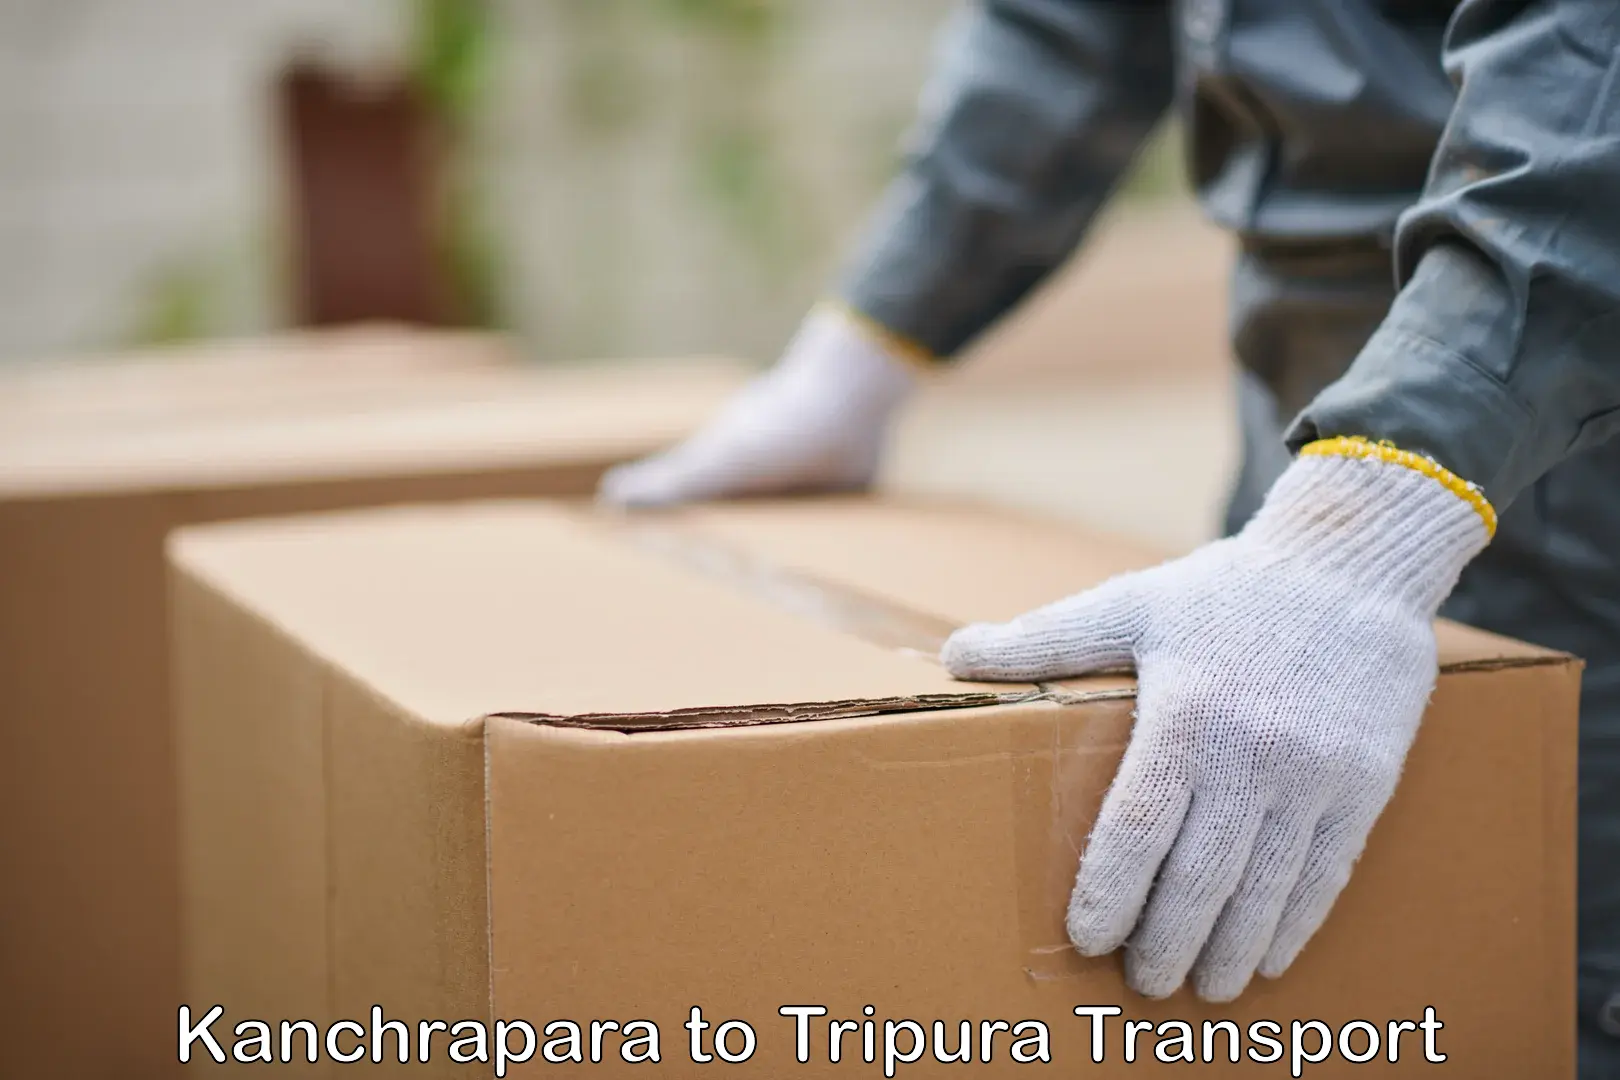 Furniture transport service Kanchrapara to Khowai